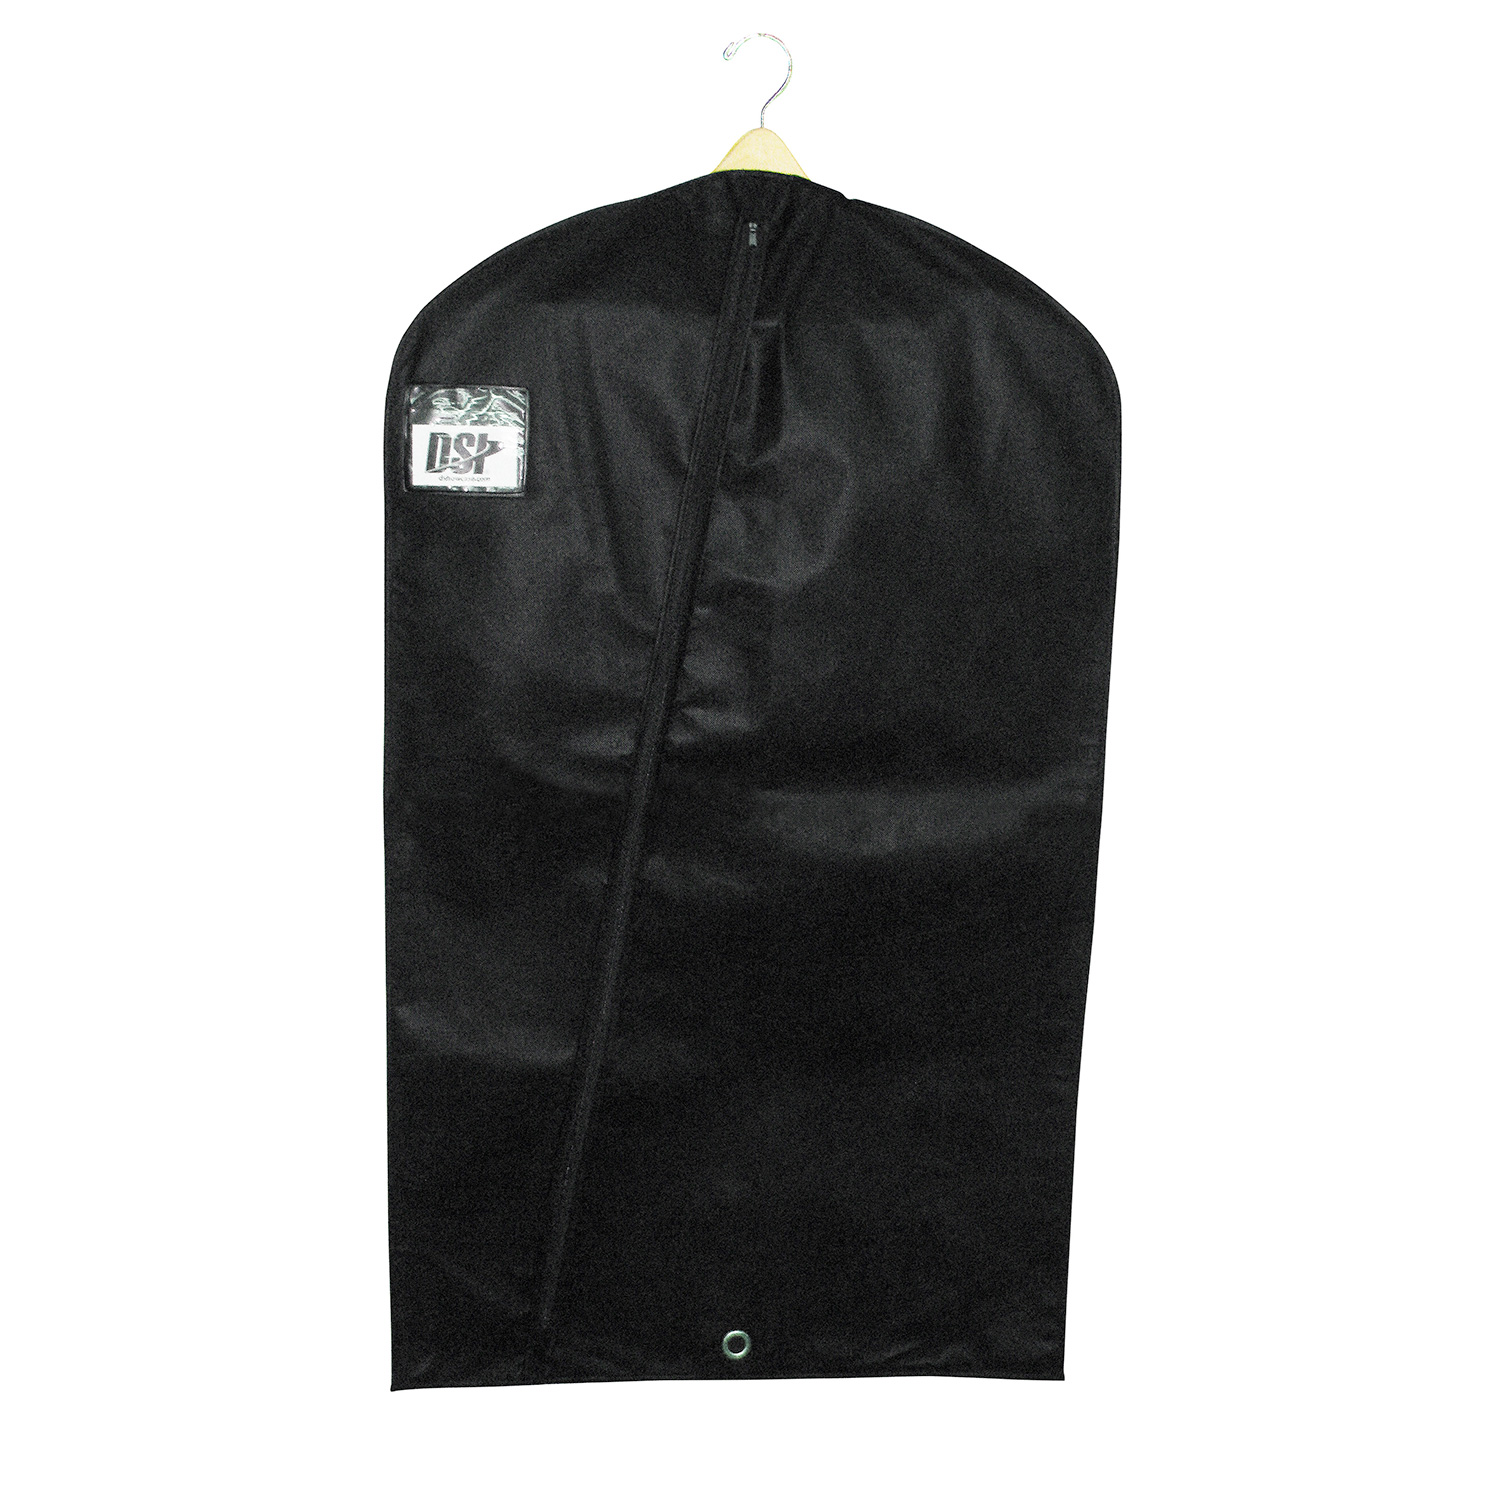 44″ SofTek Garment Bag 1